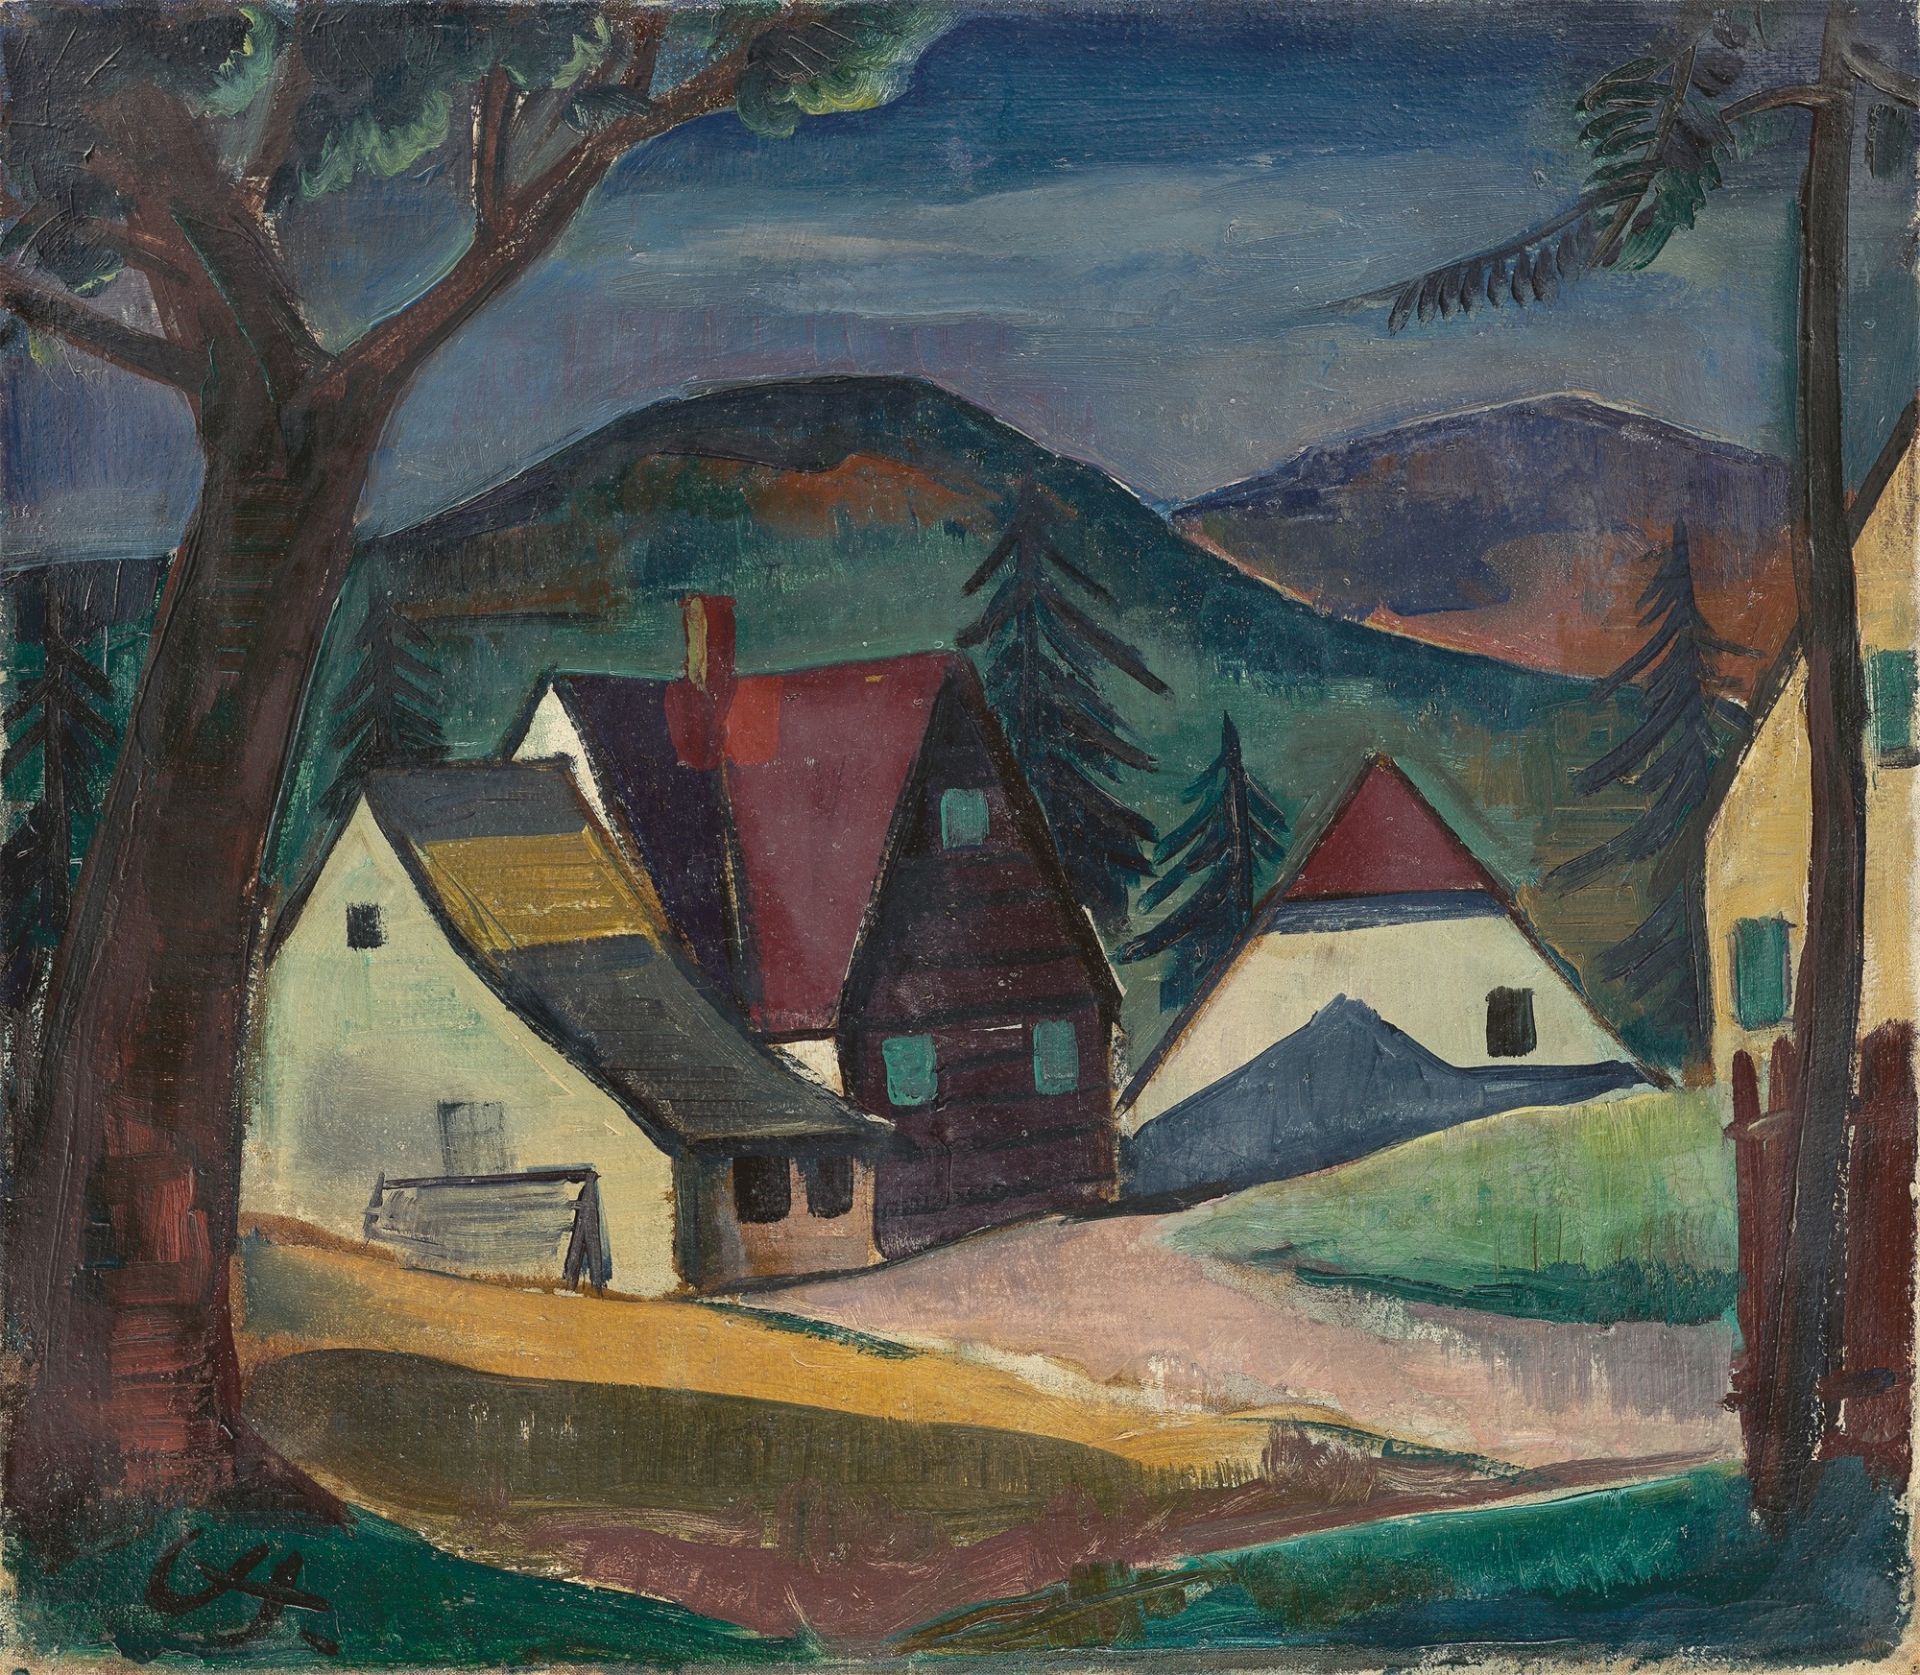 Karl Hofer. ”Kleine Schwarzwaldlandschaft”. Circa 1920/21